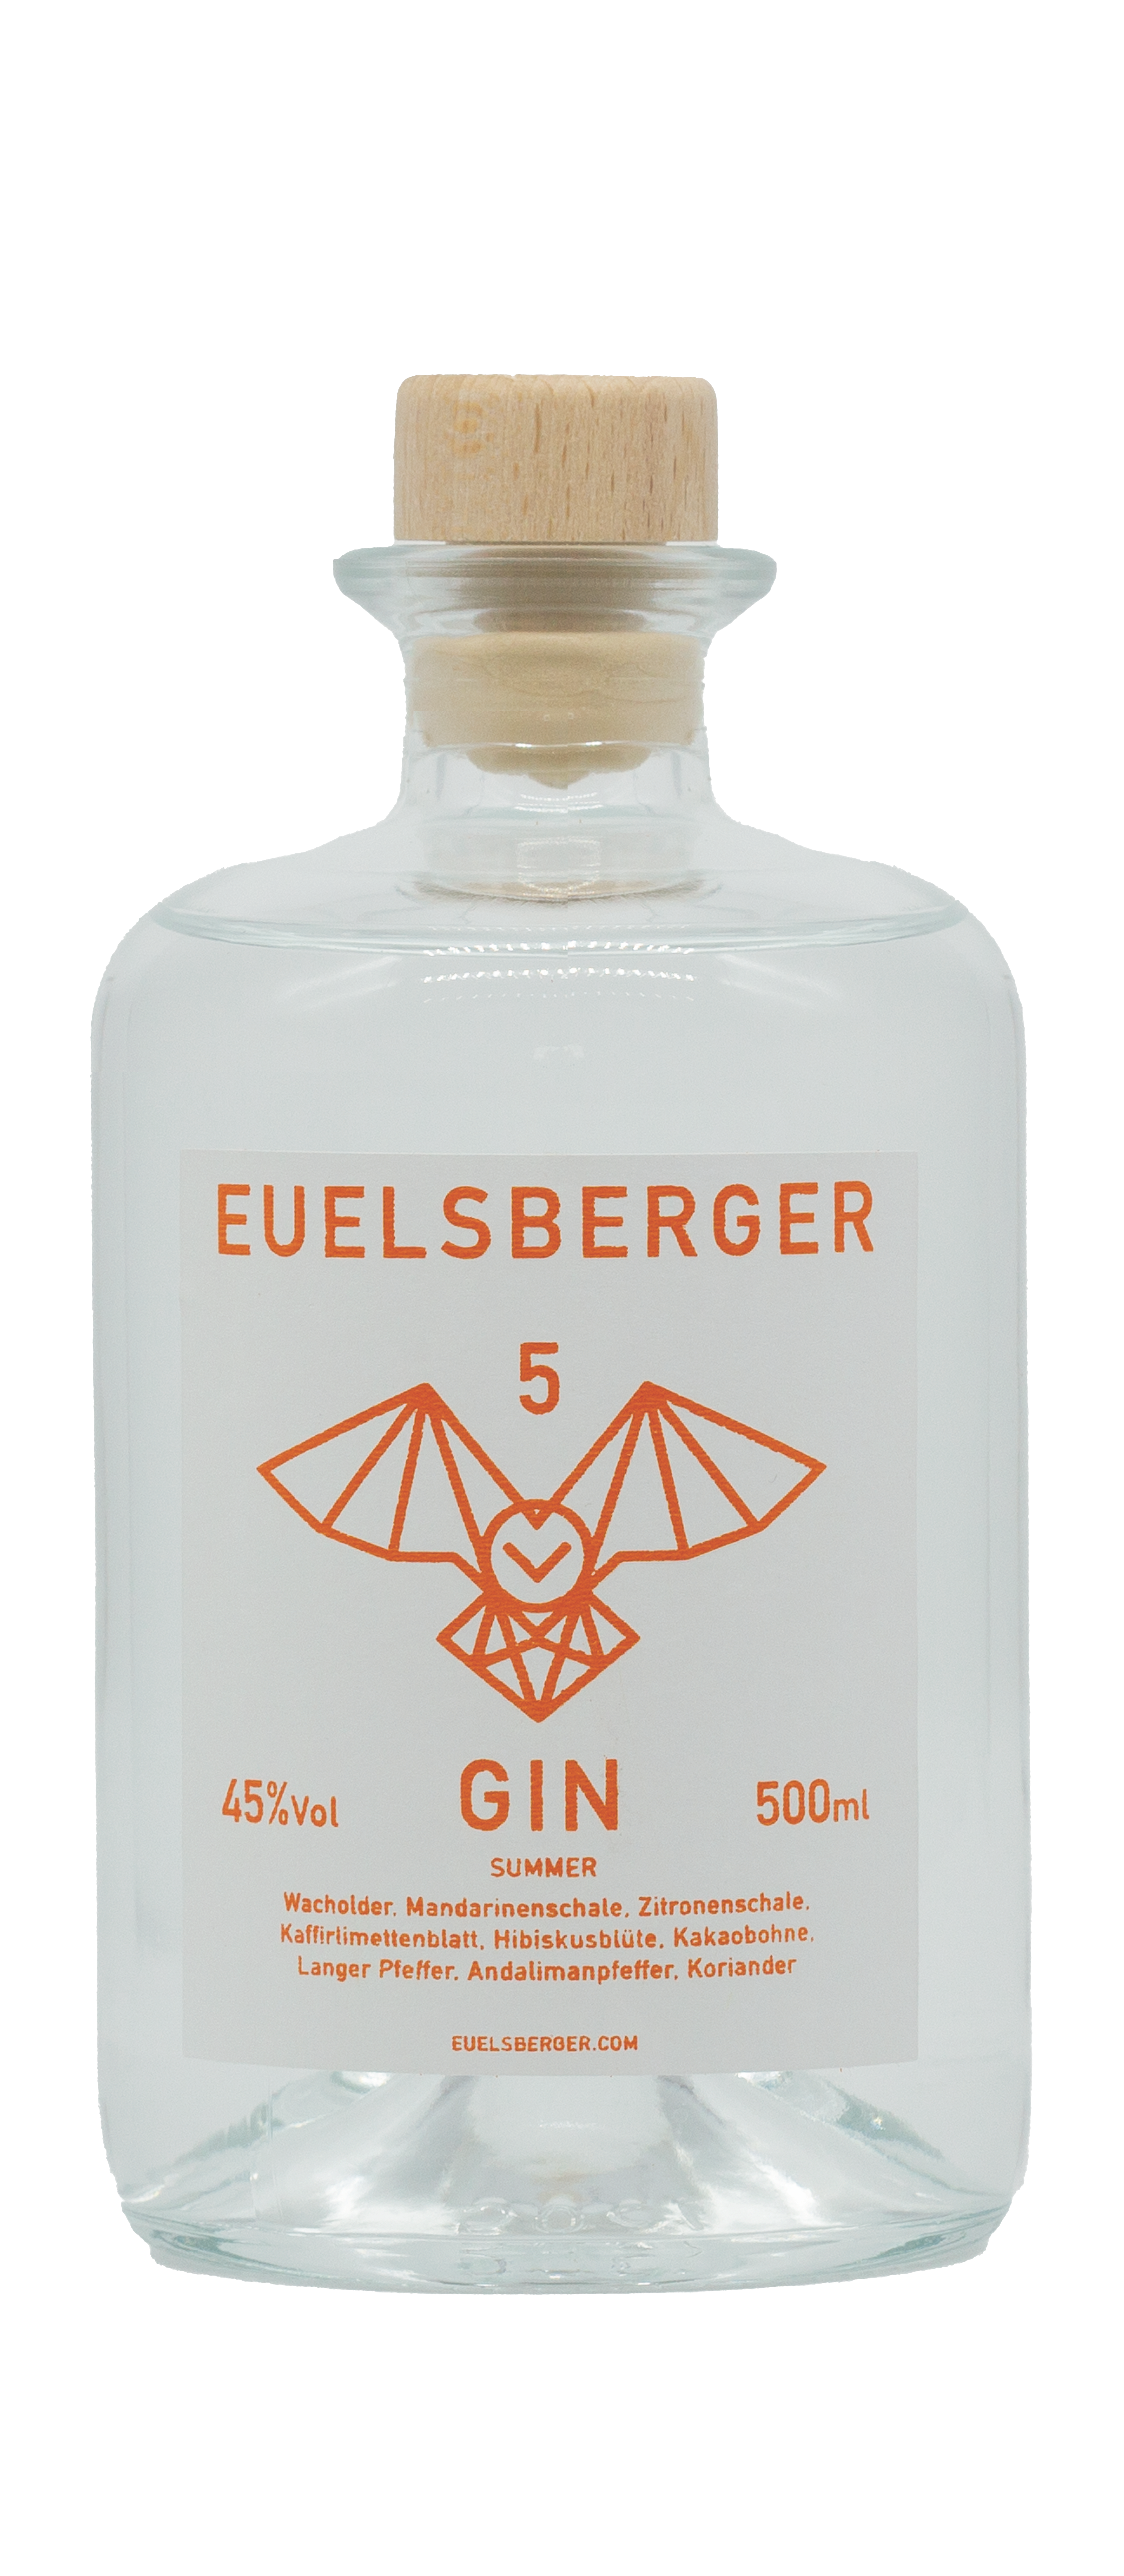 "Euelsberger Gin" Eifel Summer